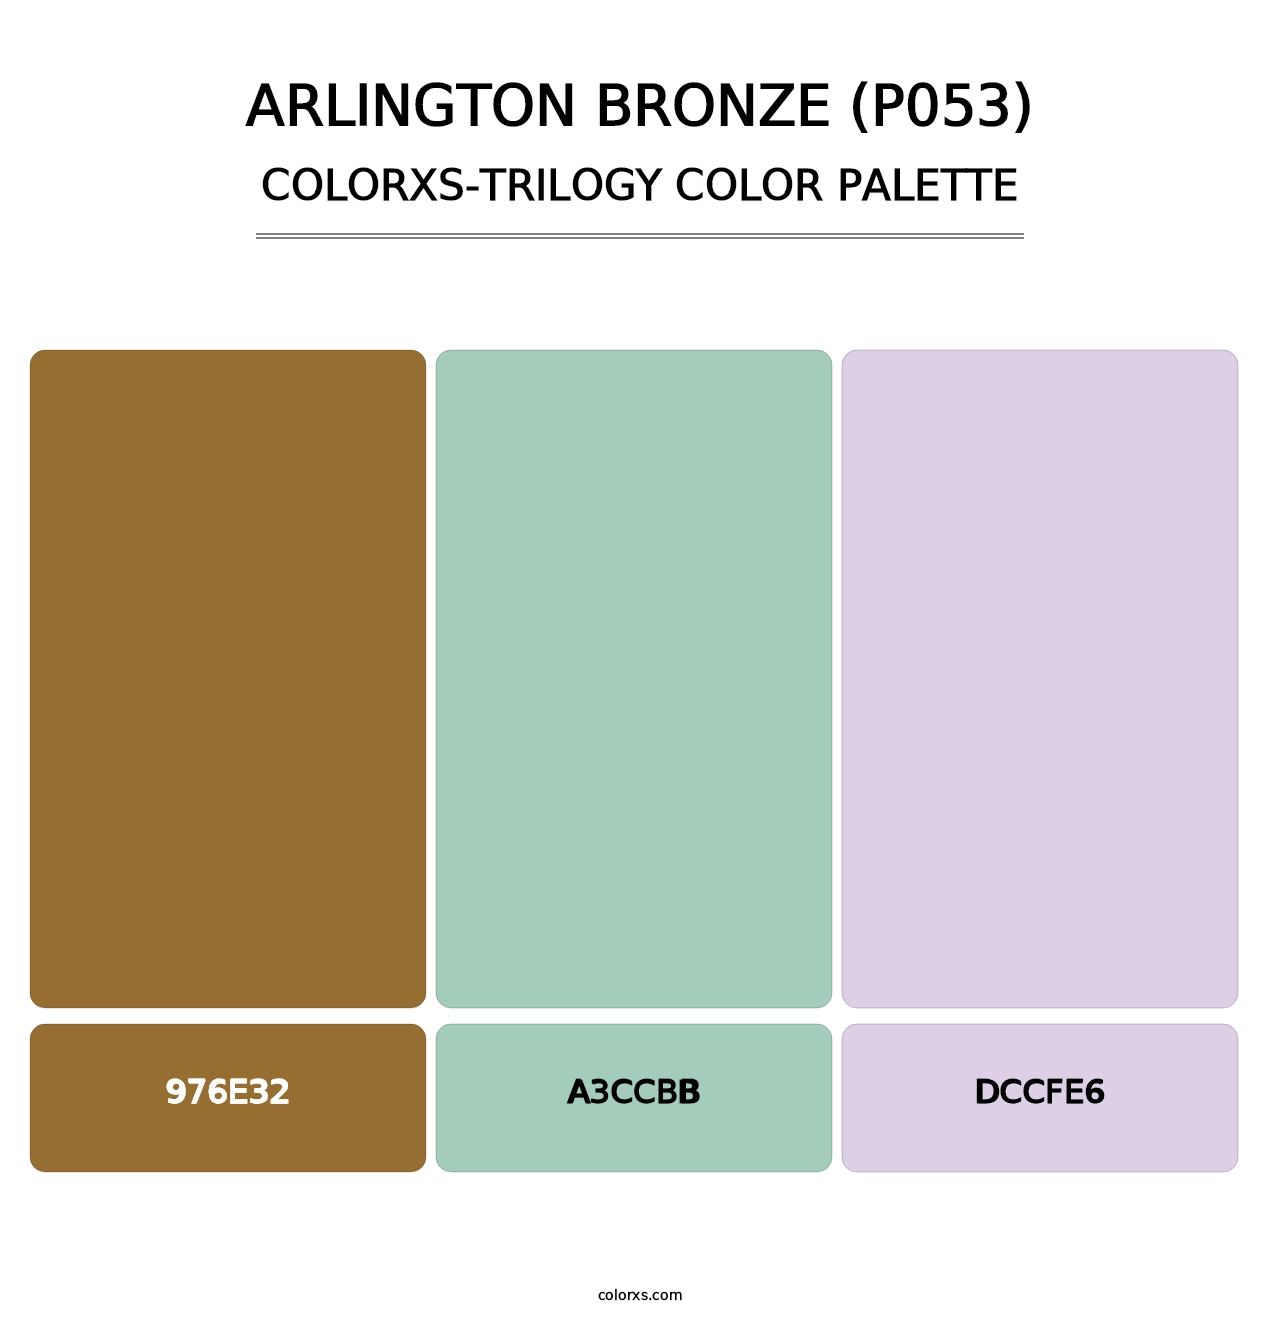 Arlington Bronze (P053) - Colorxs Trilogy Palette